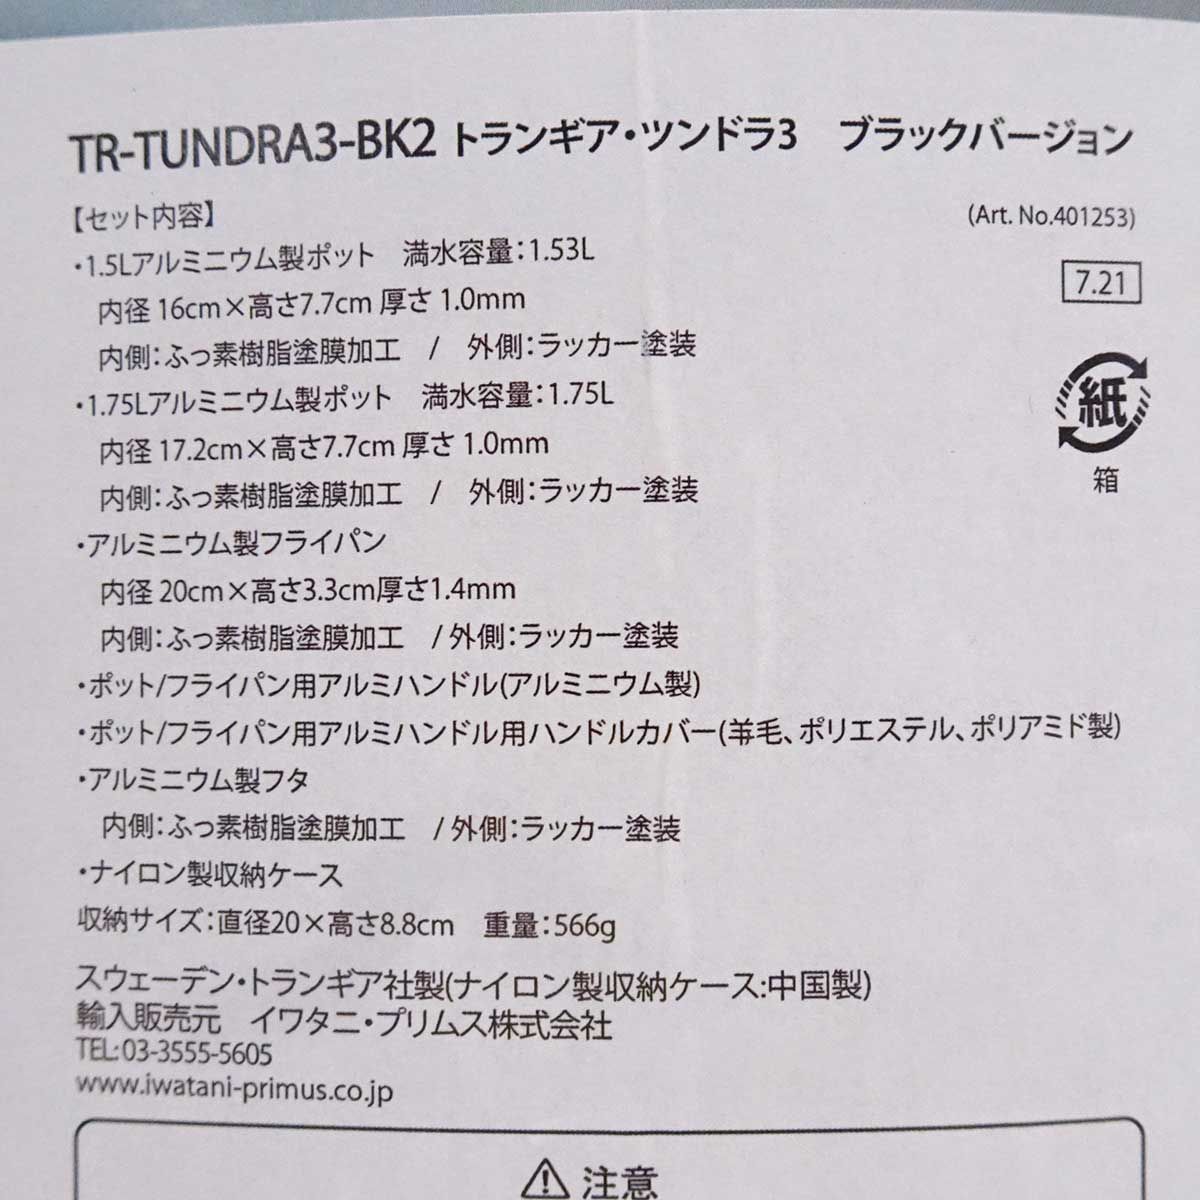 【未使用】トランギア ツンドラ3 ブラックバージョン クッカーセット TR-TUNDRA3-BK2 アウトドア キャンプ